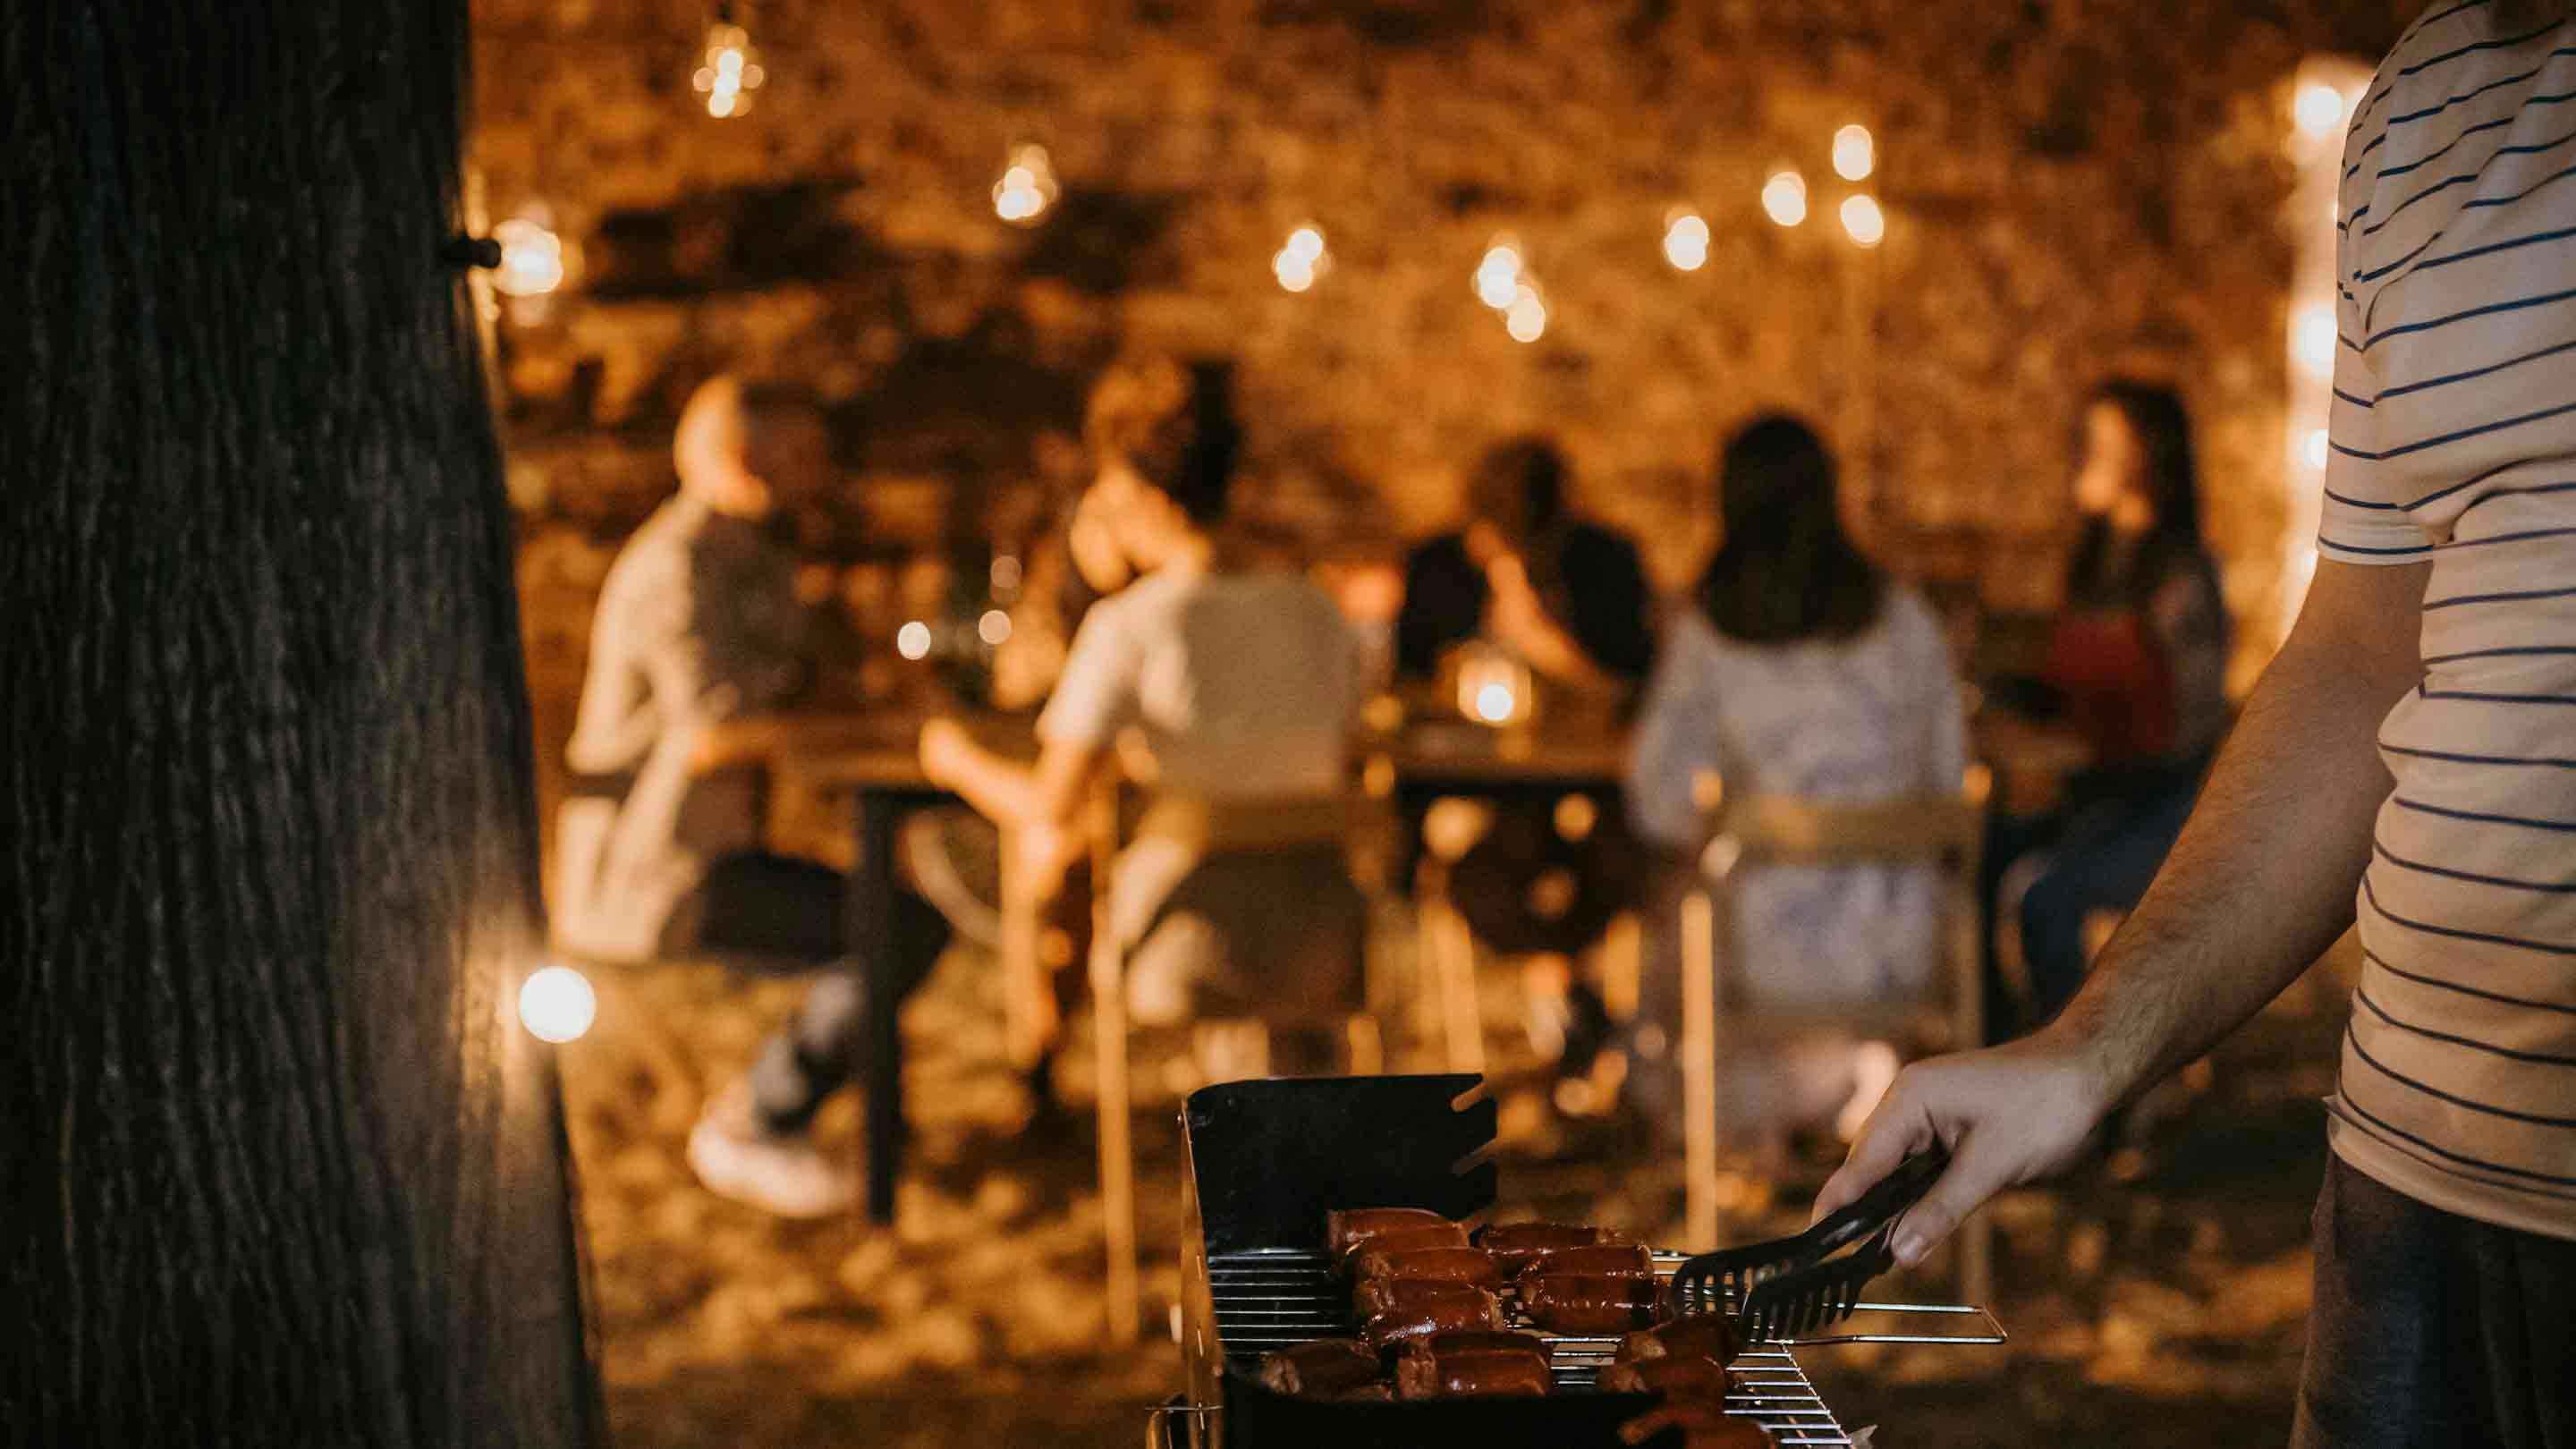 Przyjaciele cieszący się wieczorem przy grillu z bajkową dekoracją światła.